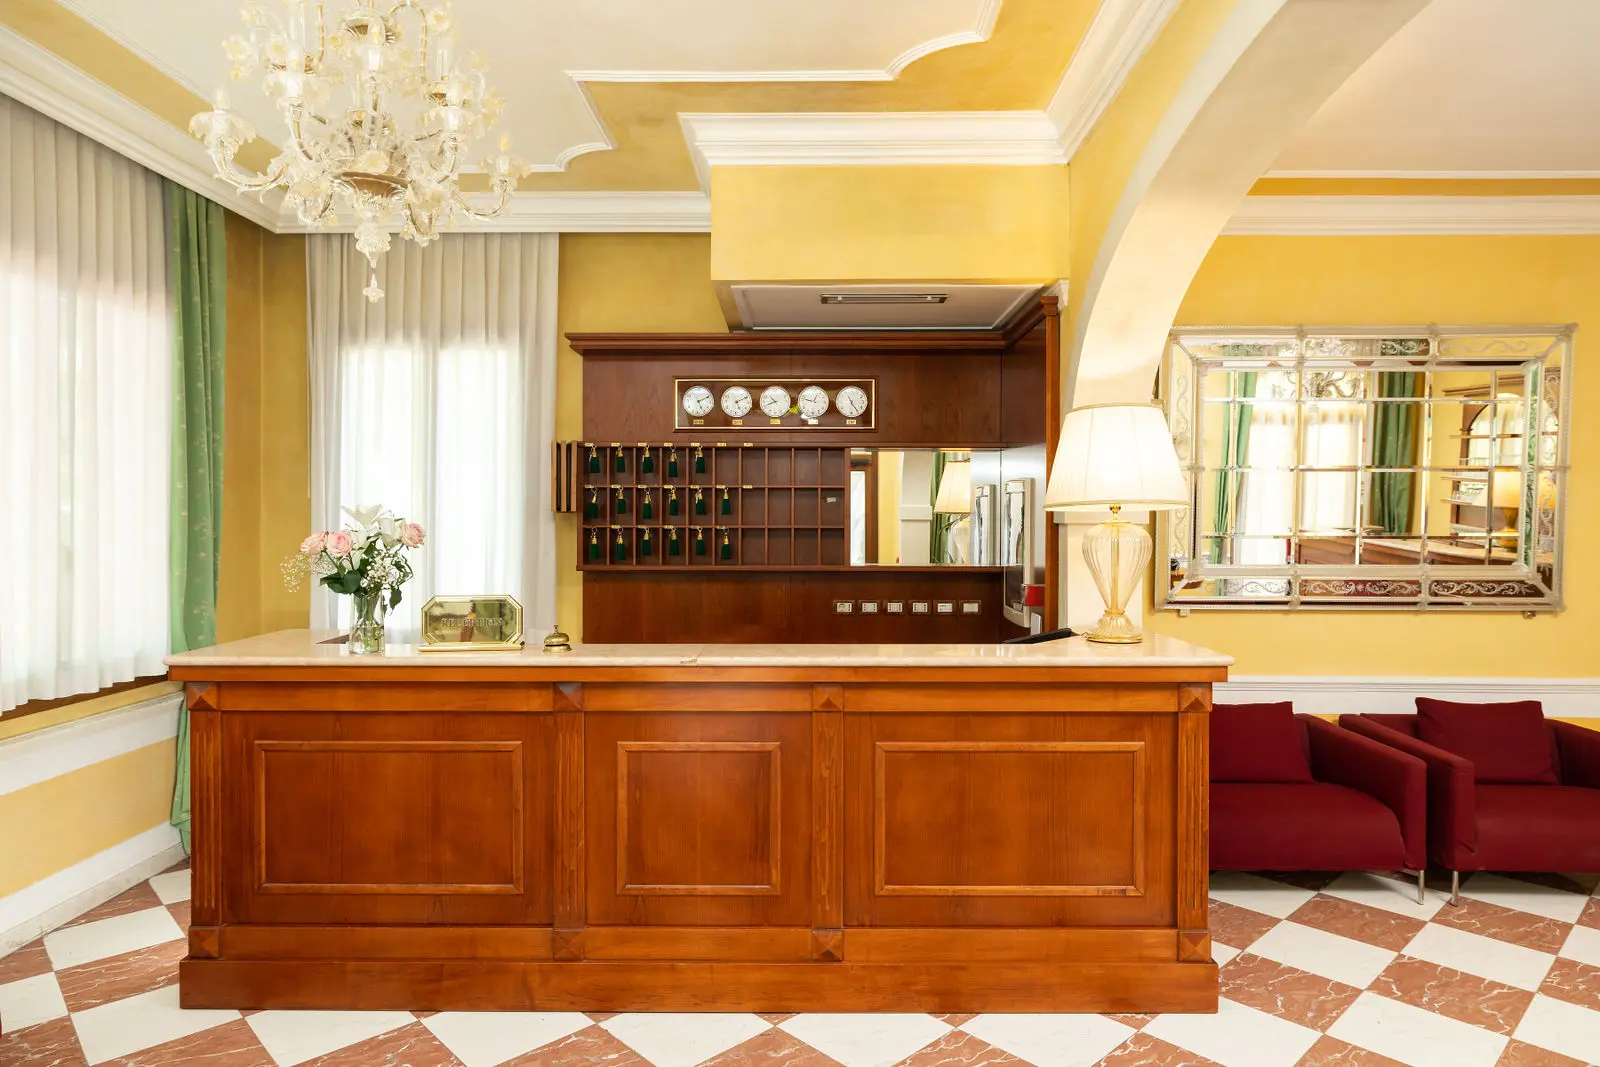 Hotel Villa Cipro, contattaci utilizzando il form